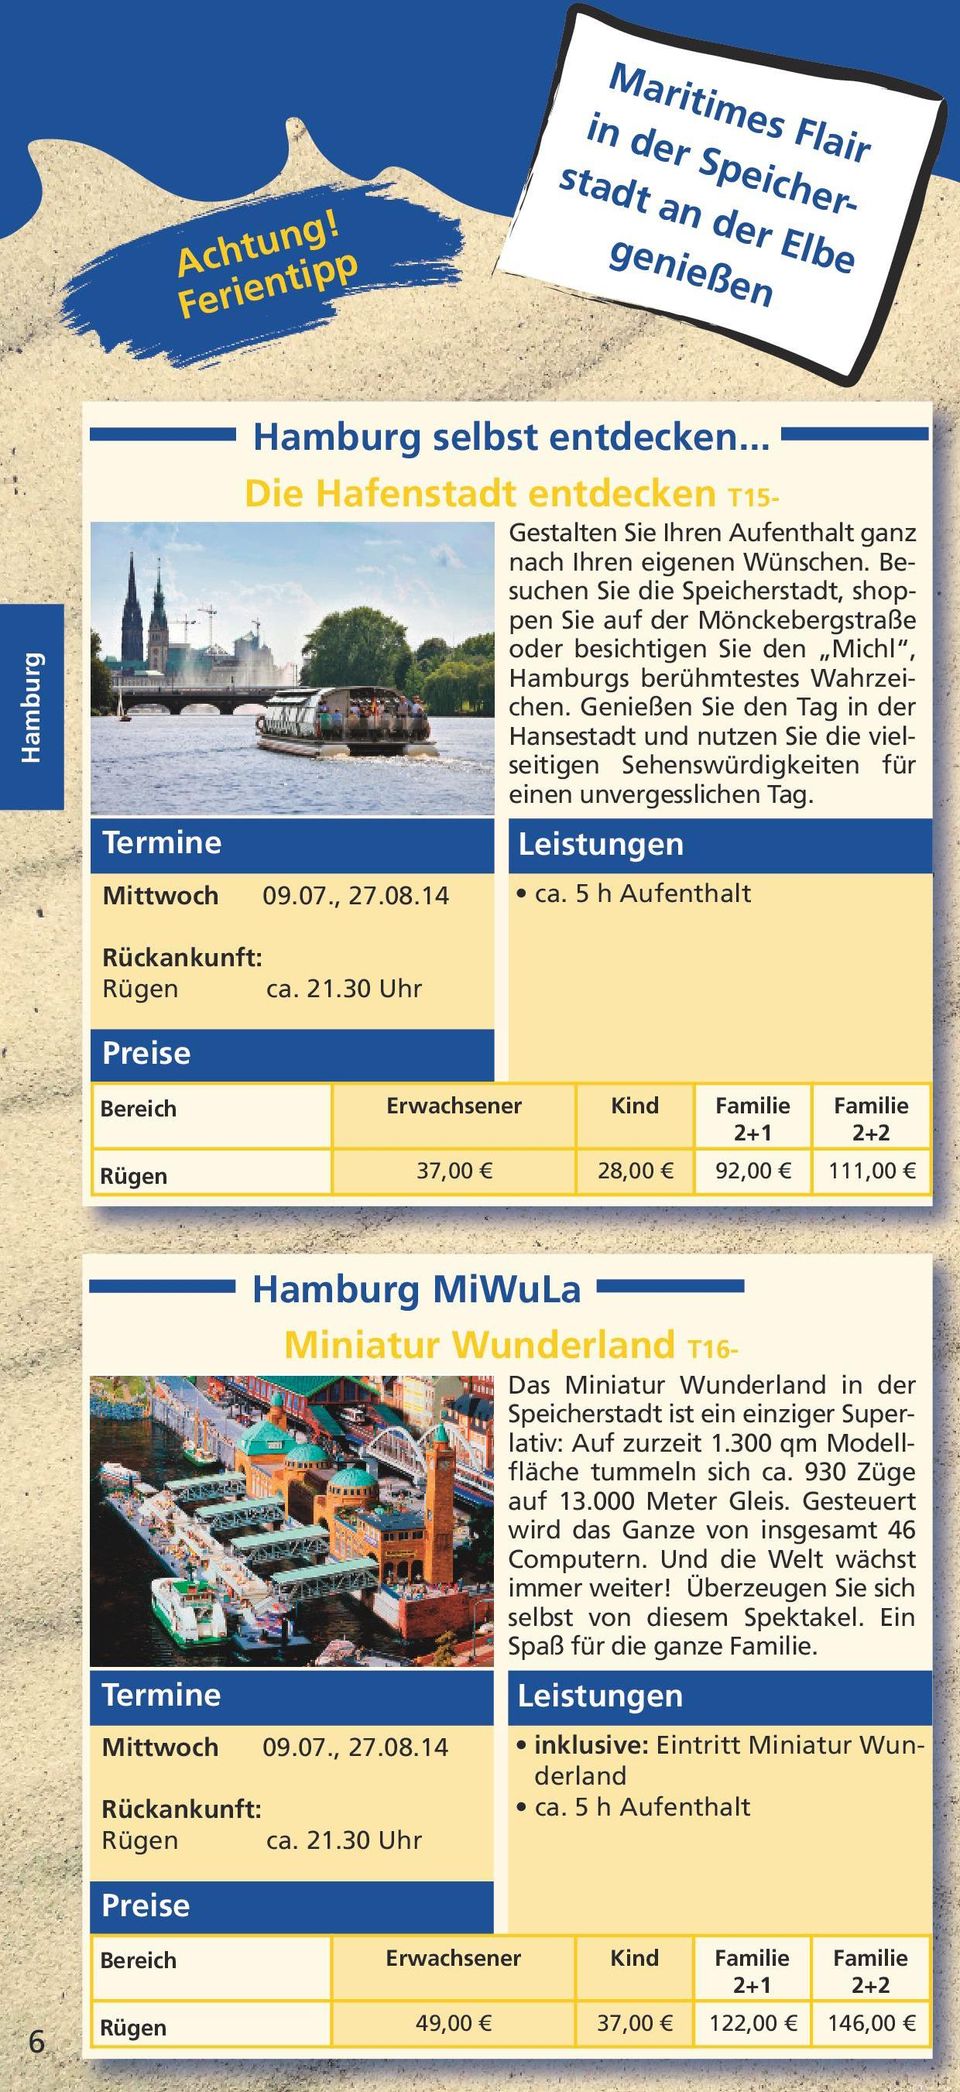 Besuchen Sie die Speicherstadt, shoppen Sie auf der Mönckebergstraße oder besichtigen Sie den Michl, Hamburgs berühmtestes Wahrzeichen.